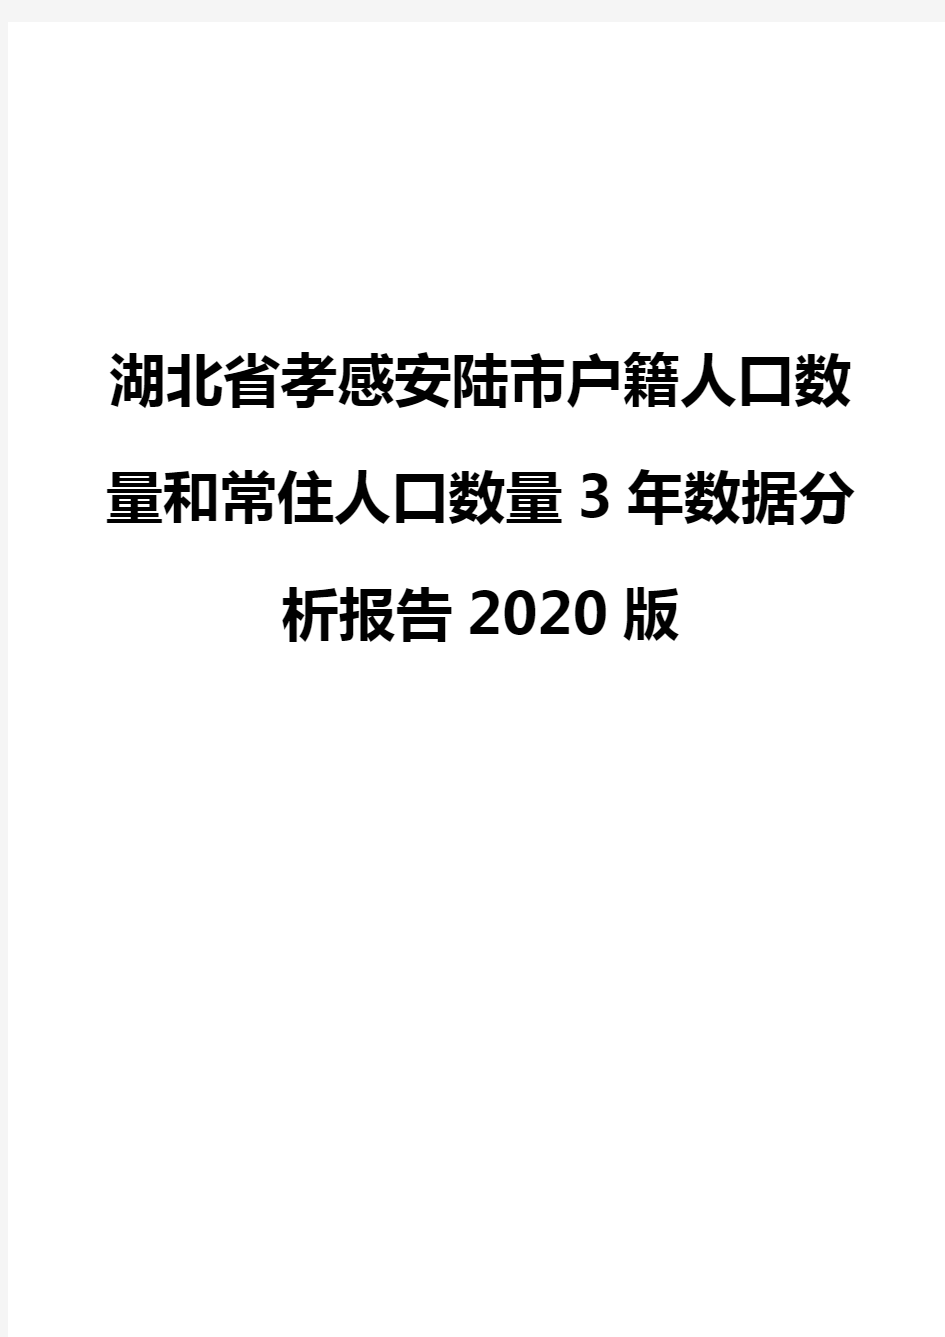 湖北省孝感安陆市户籍人口数量和常住人口数量3年数据分析报告2020版